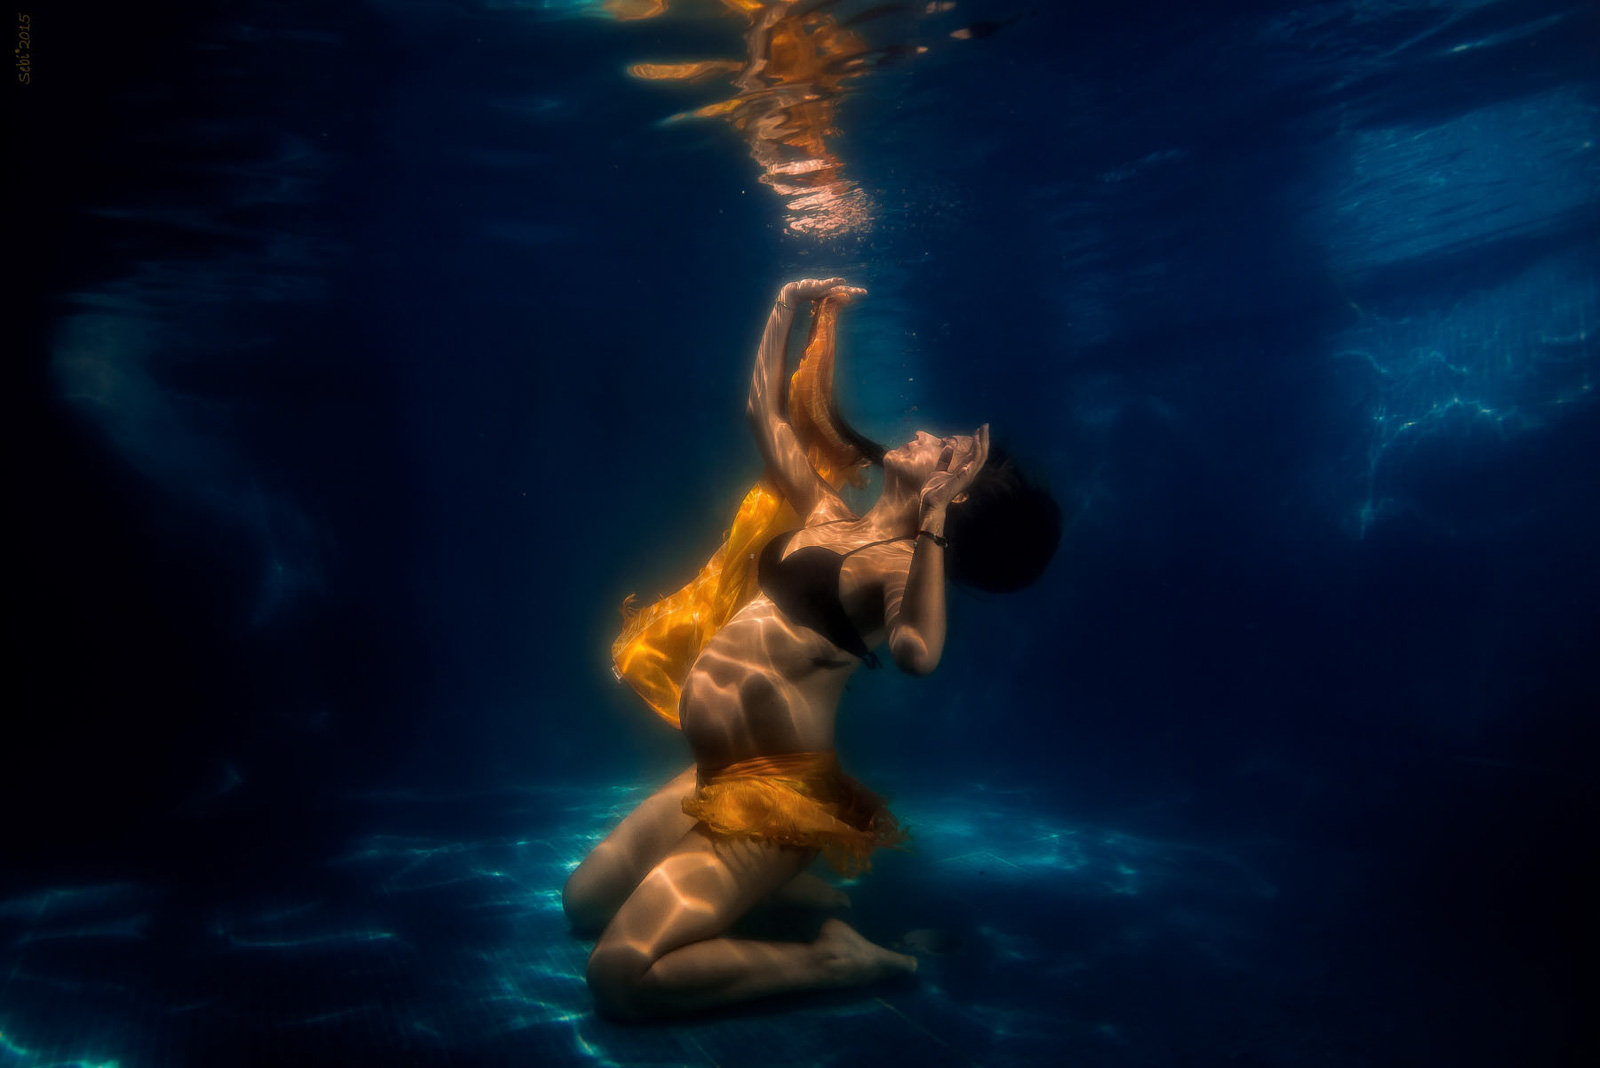 Underwater Maternity Photos